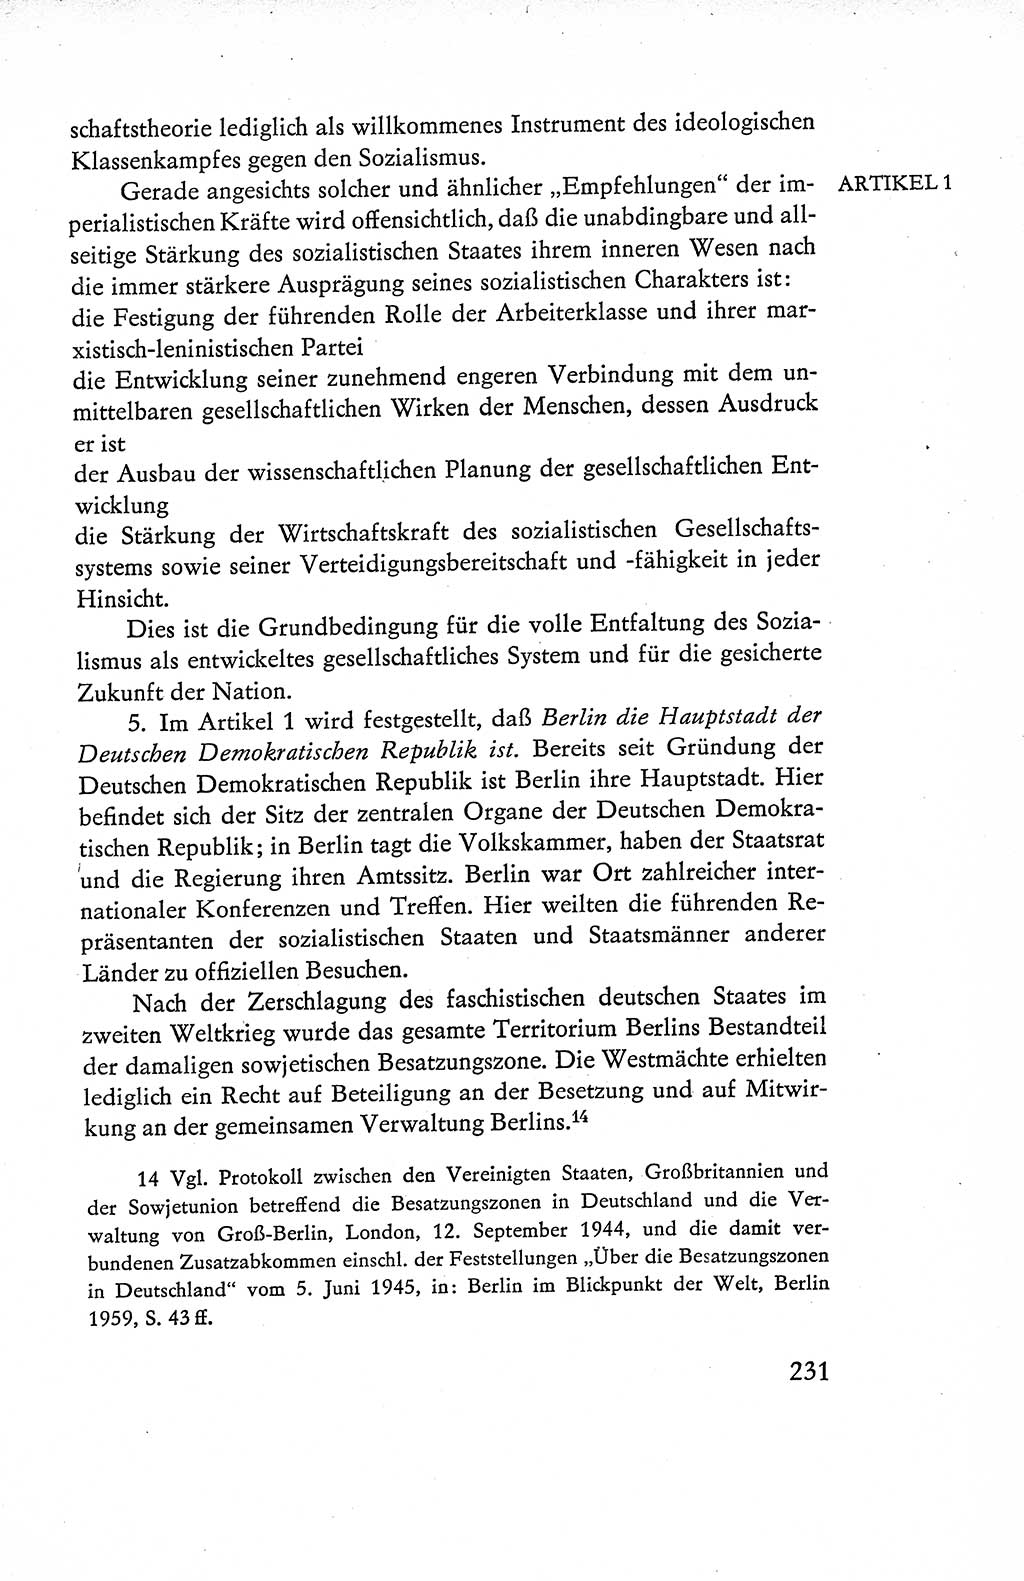 Verfassung der Deutschen Demokratischen Republik (DDR), Dokumente, Kommentar 1969, Band 1, Seite 231 (Verf. DDR Dok. Komm. 1969, Bd. 1, S. 231)